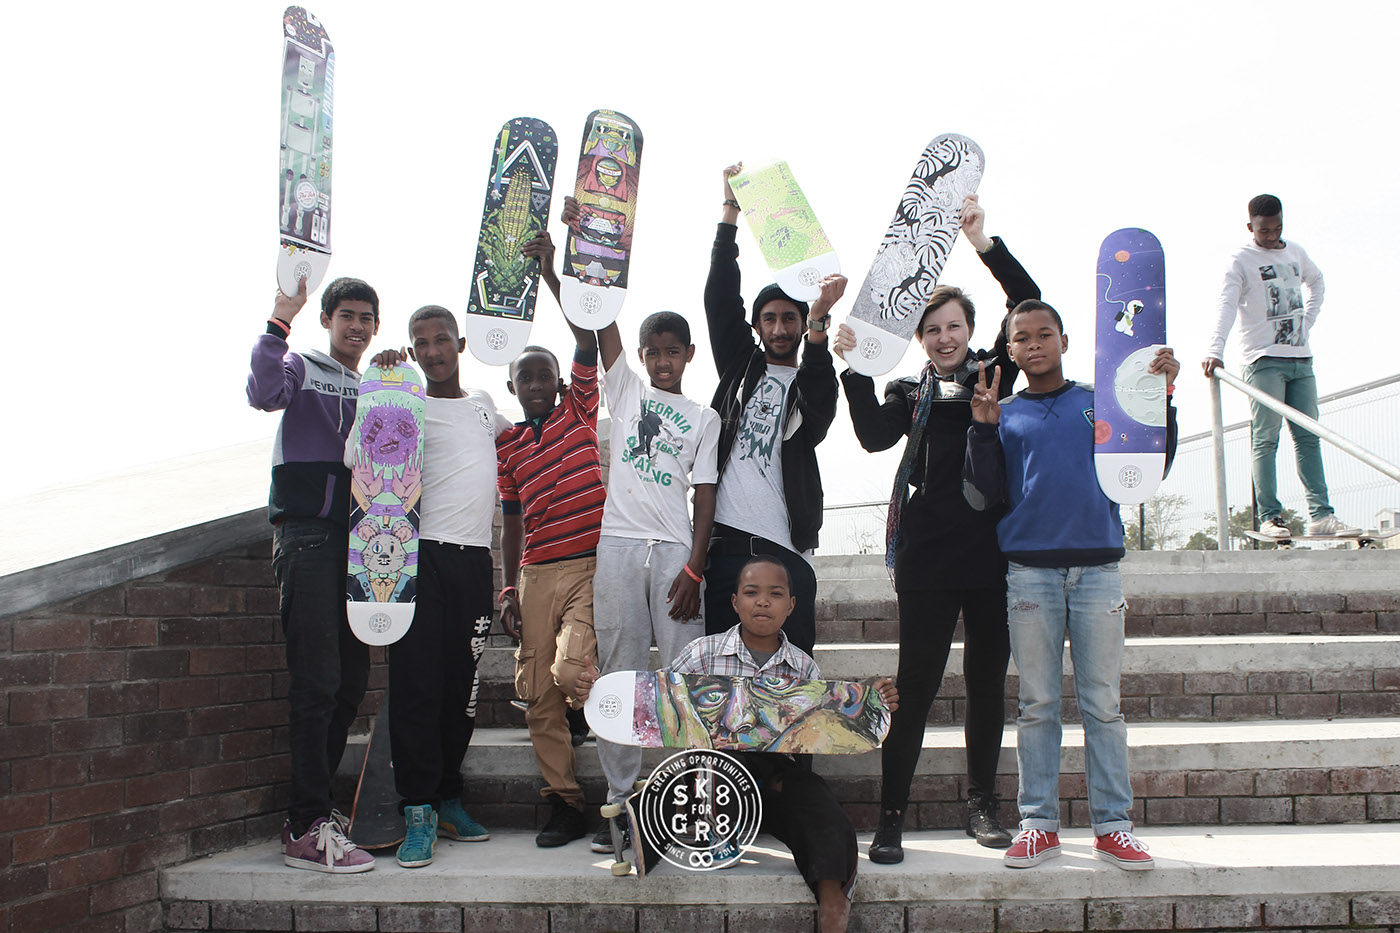 art design social upliftment start-up creative skate skate culture Skate Decks